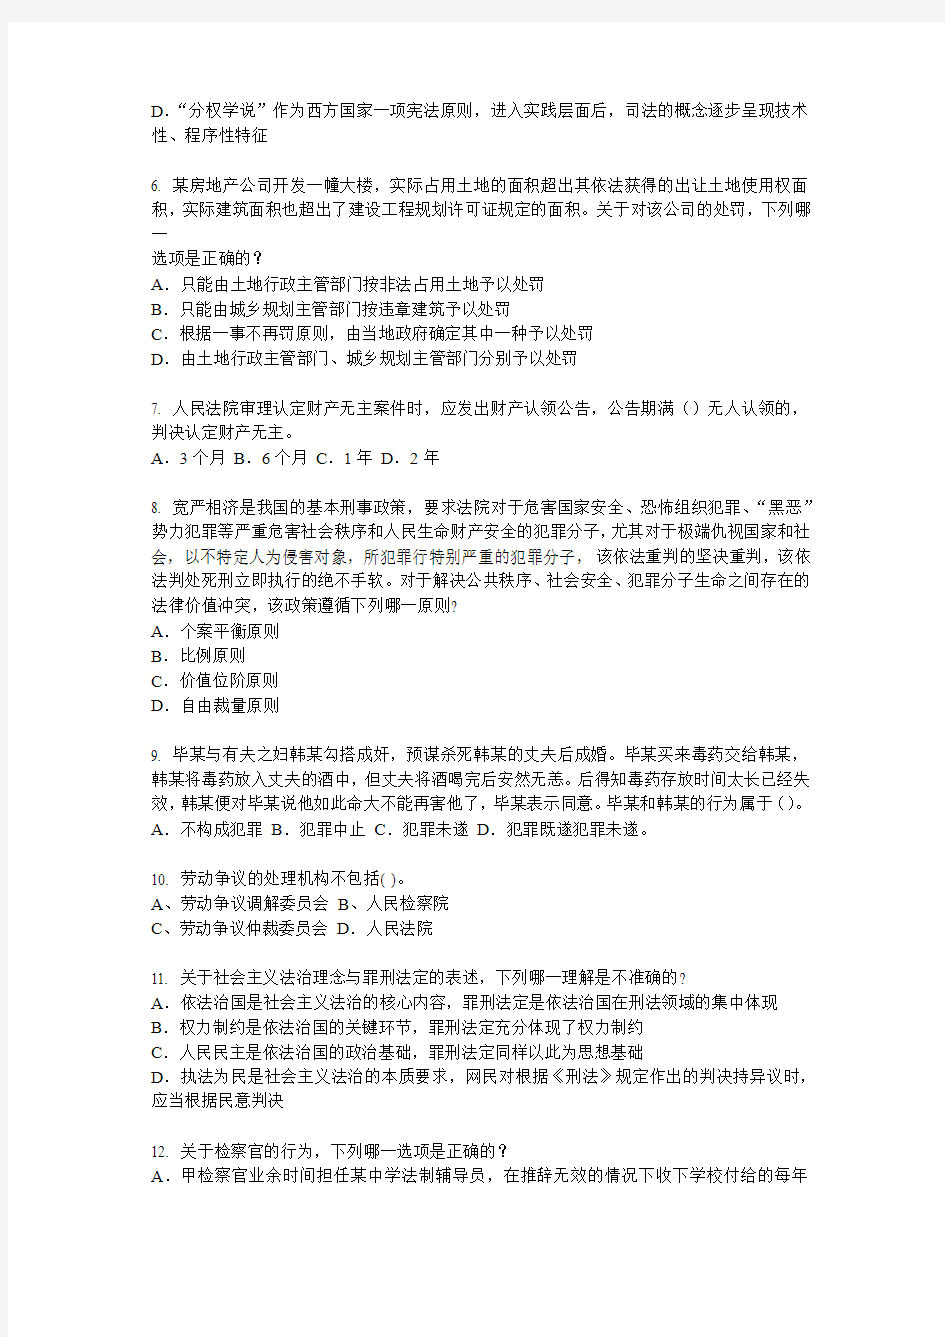 台湾省2015年企业法律顾问考试《综合法律》模拟试题